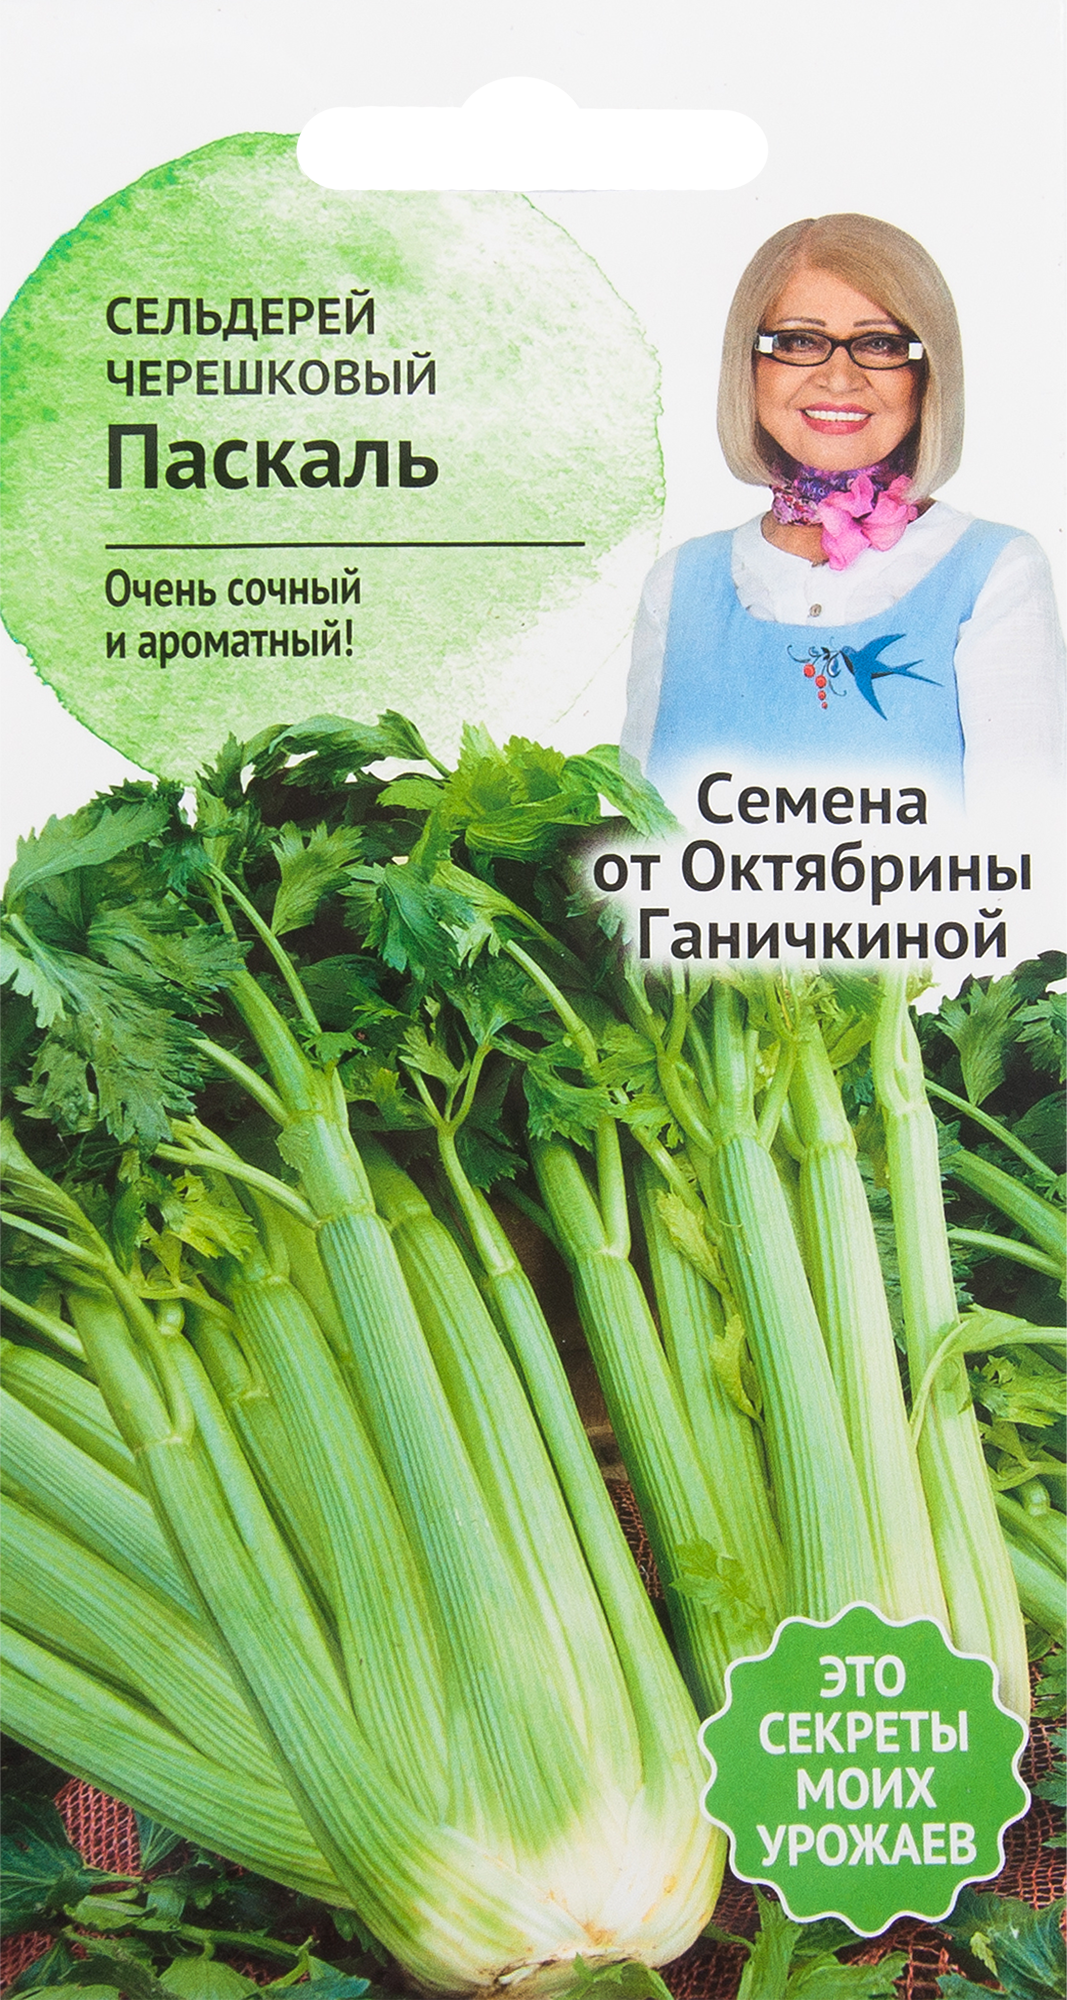 Семена Сельдерей «Паскаль» 0.3 г в Новосибирске – купить по низкой цене винтернет-магазине Леруа Мерлен